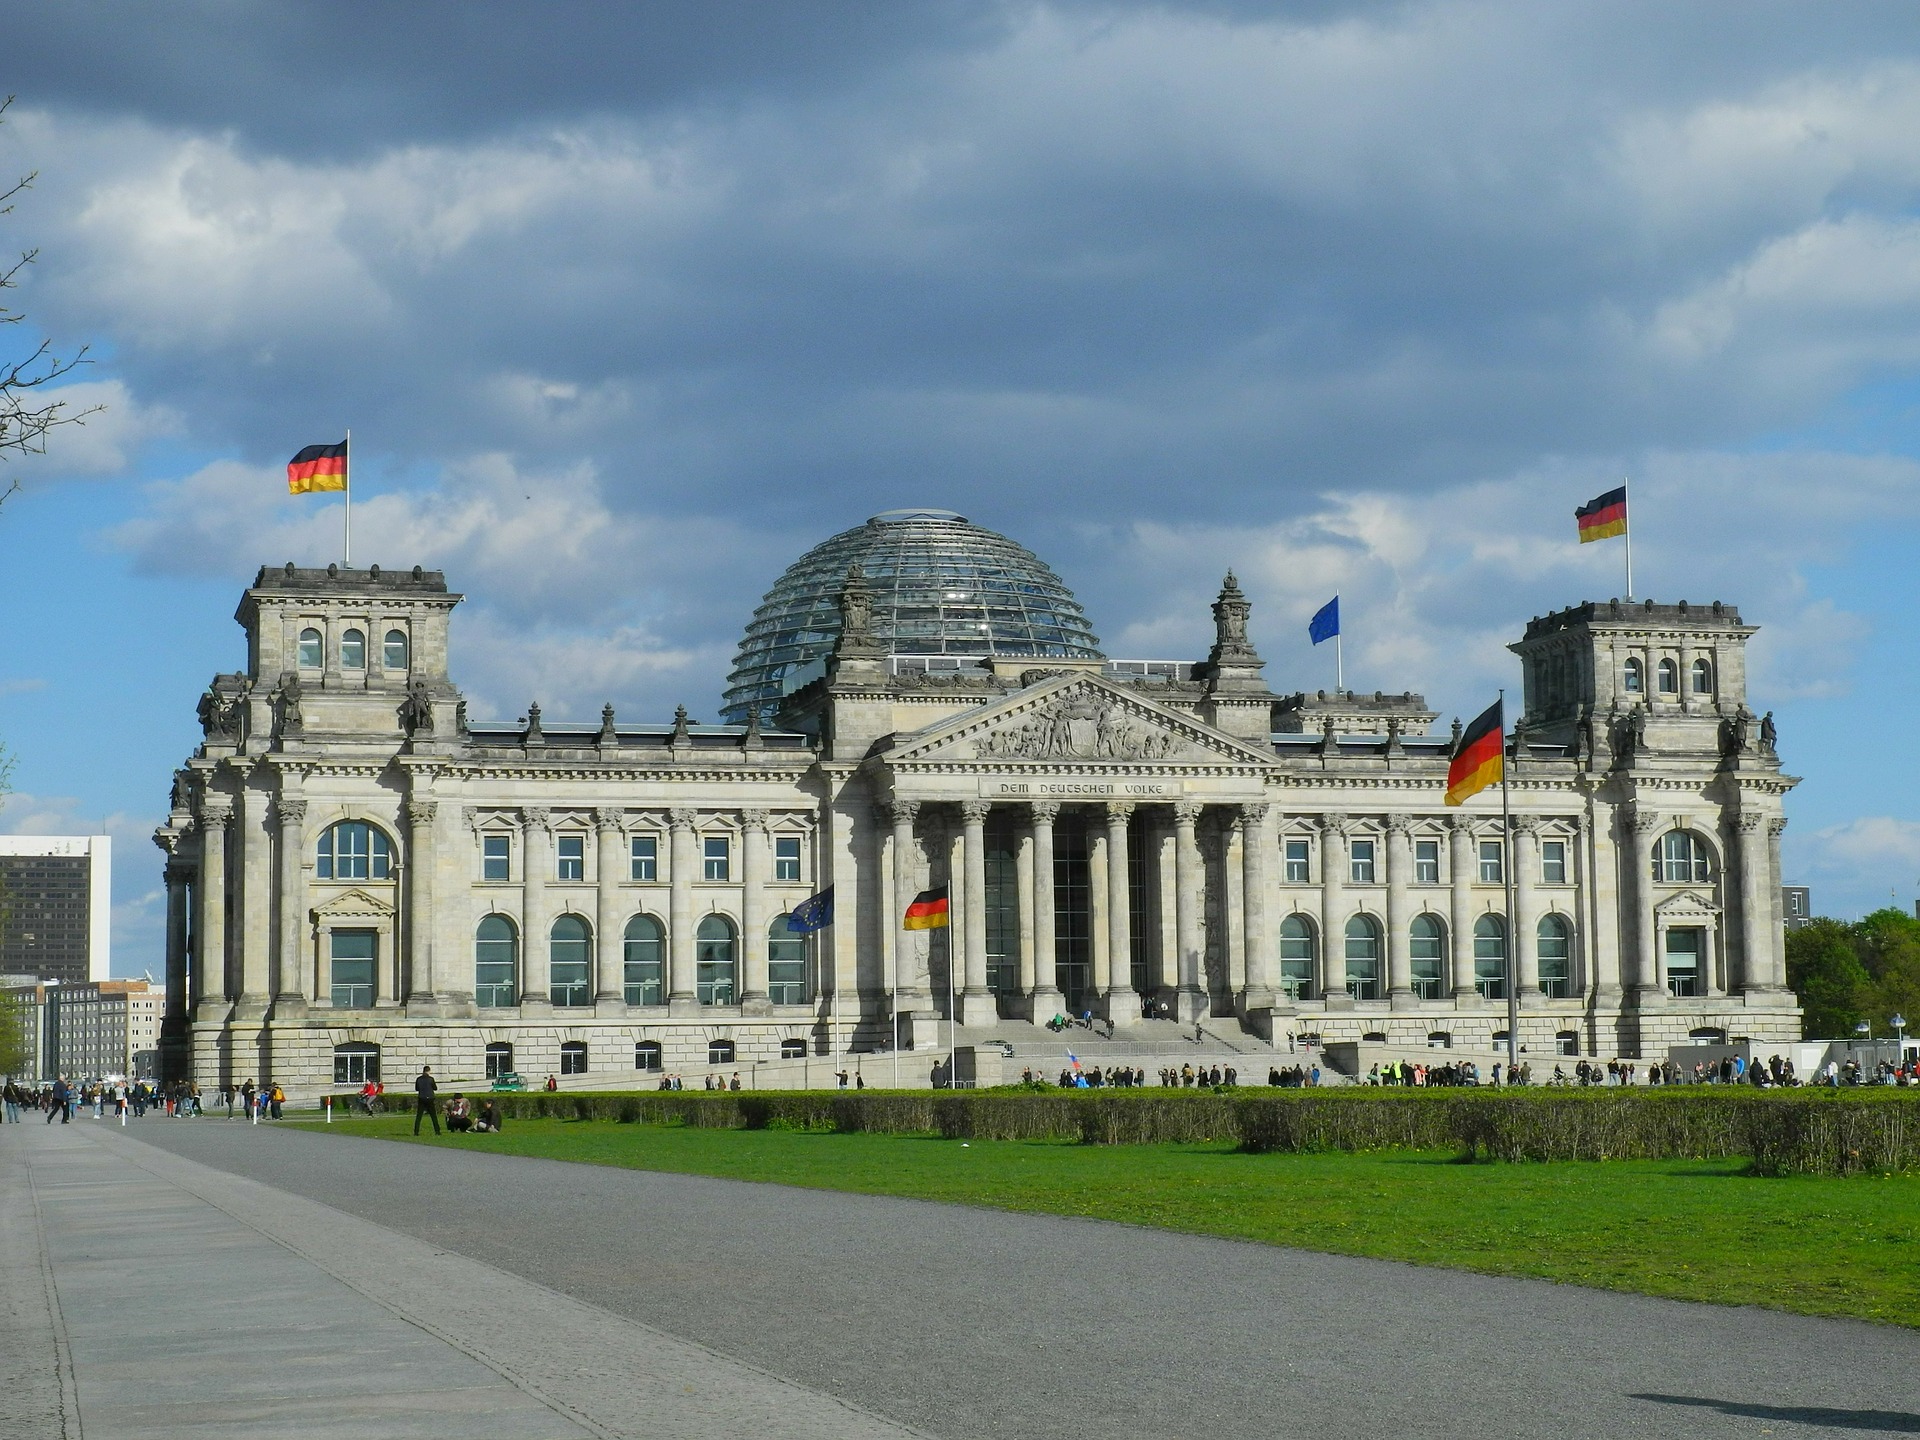  Deutscher Bundestag - Foto: Pixabay.com - Karlheinz Pape 